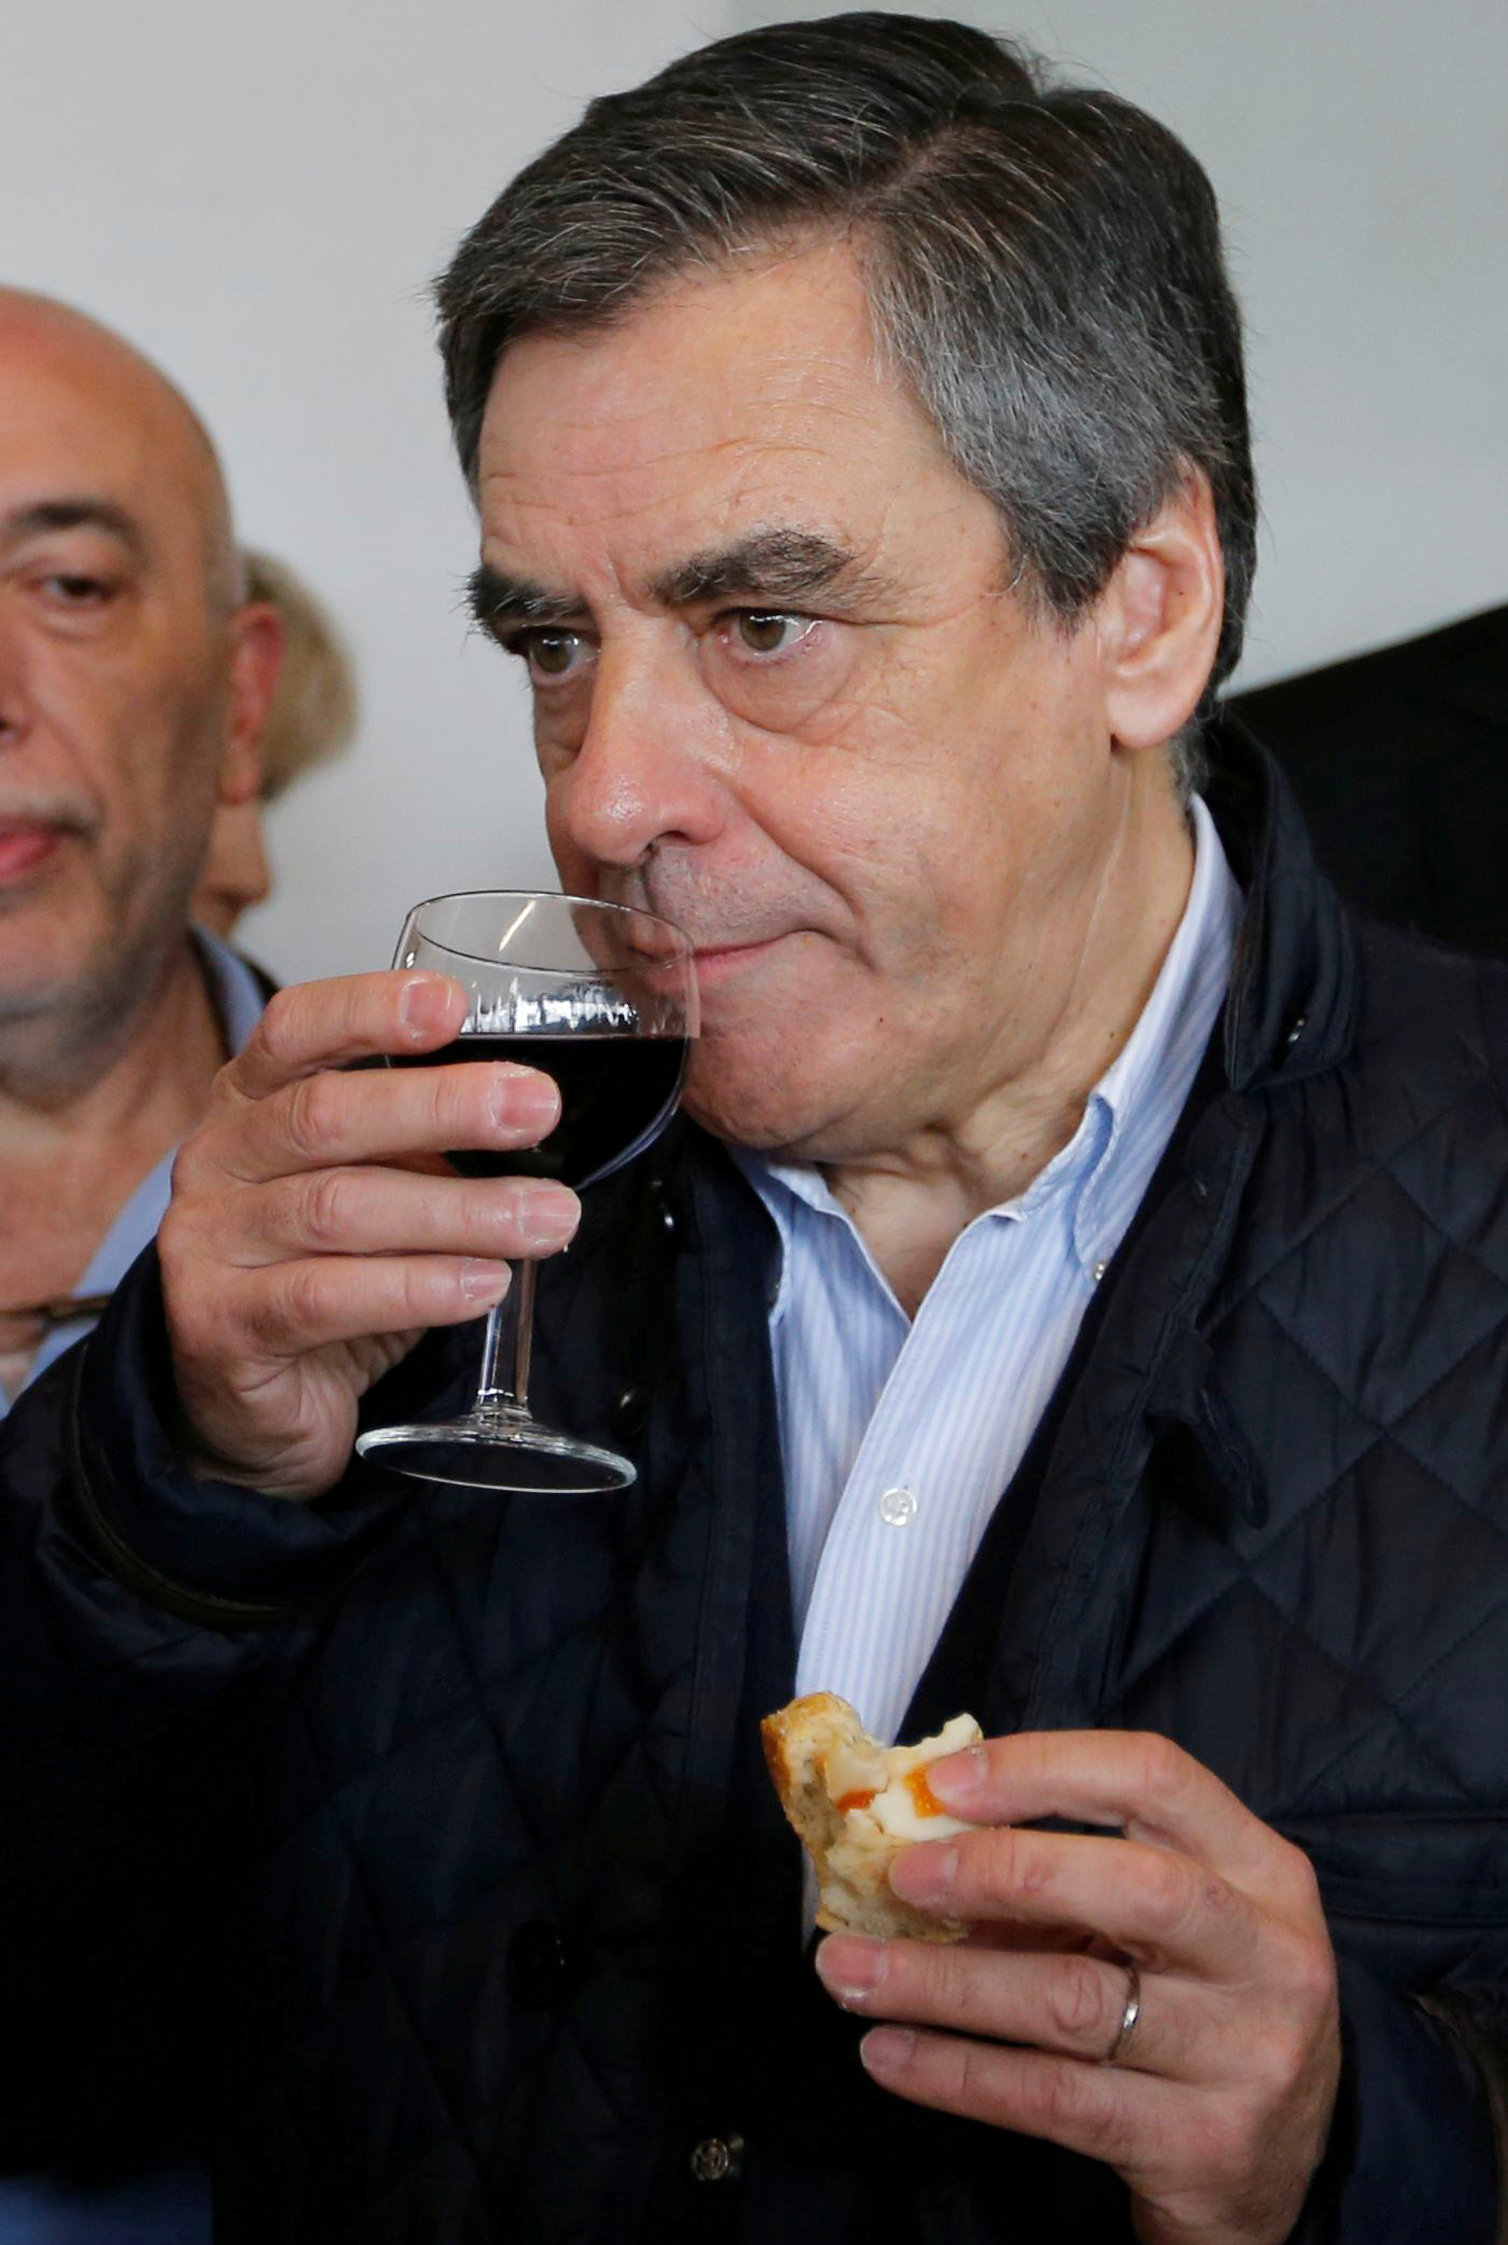 المرشح الرئاسى الفرنسى يتناول النبيذ والطعام